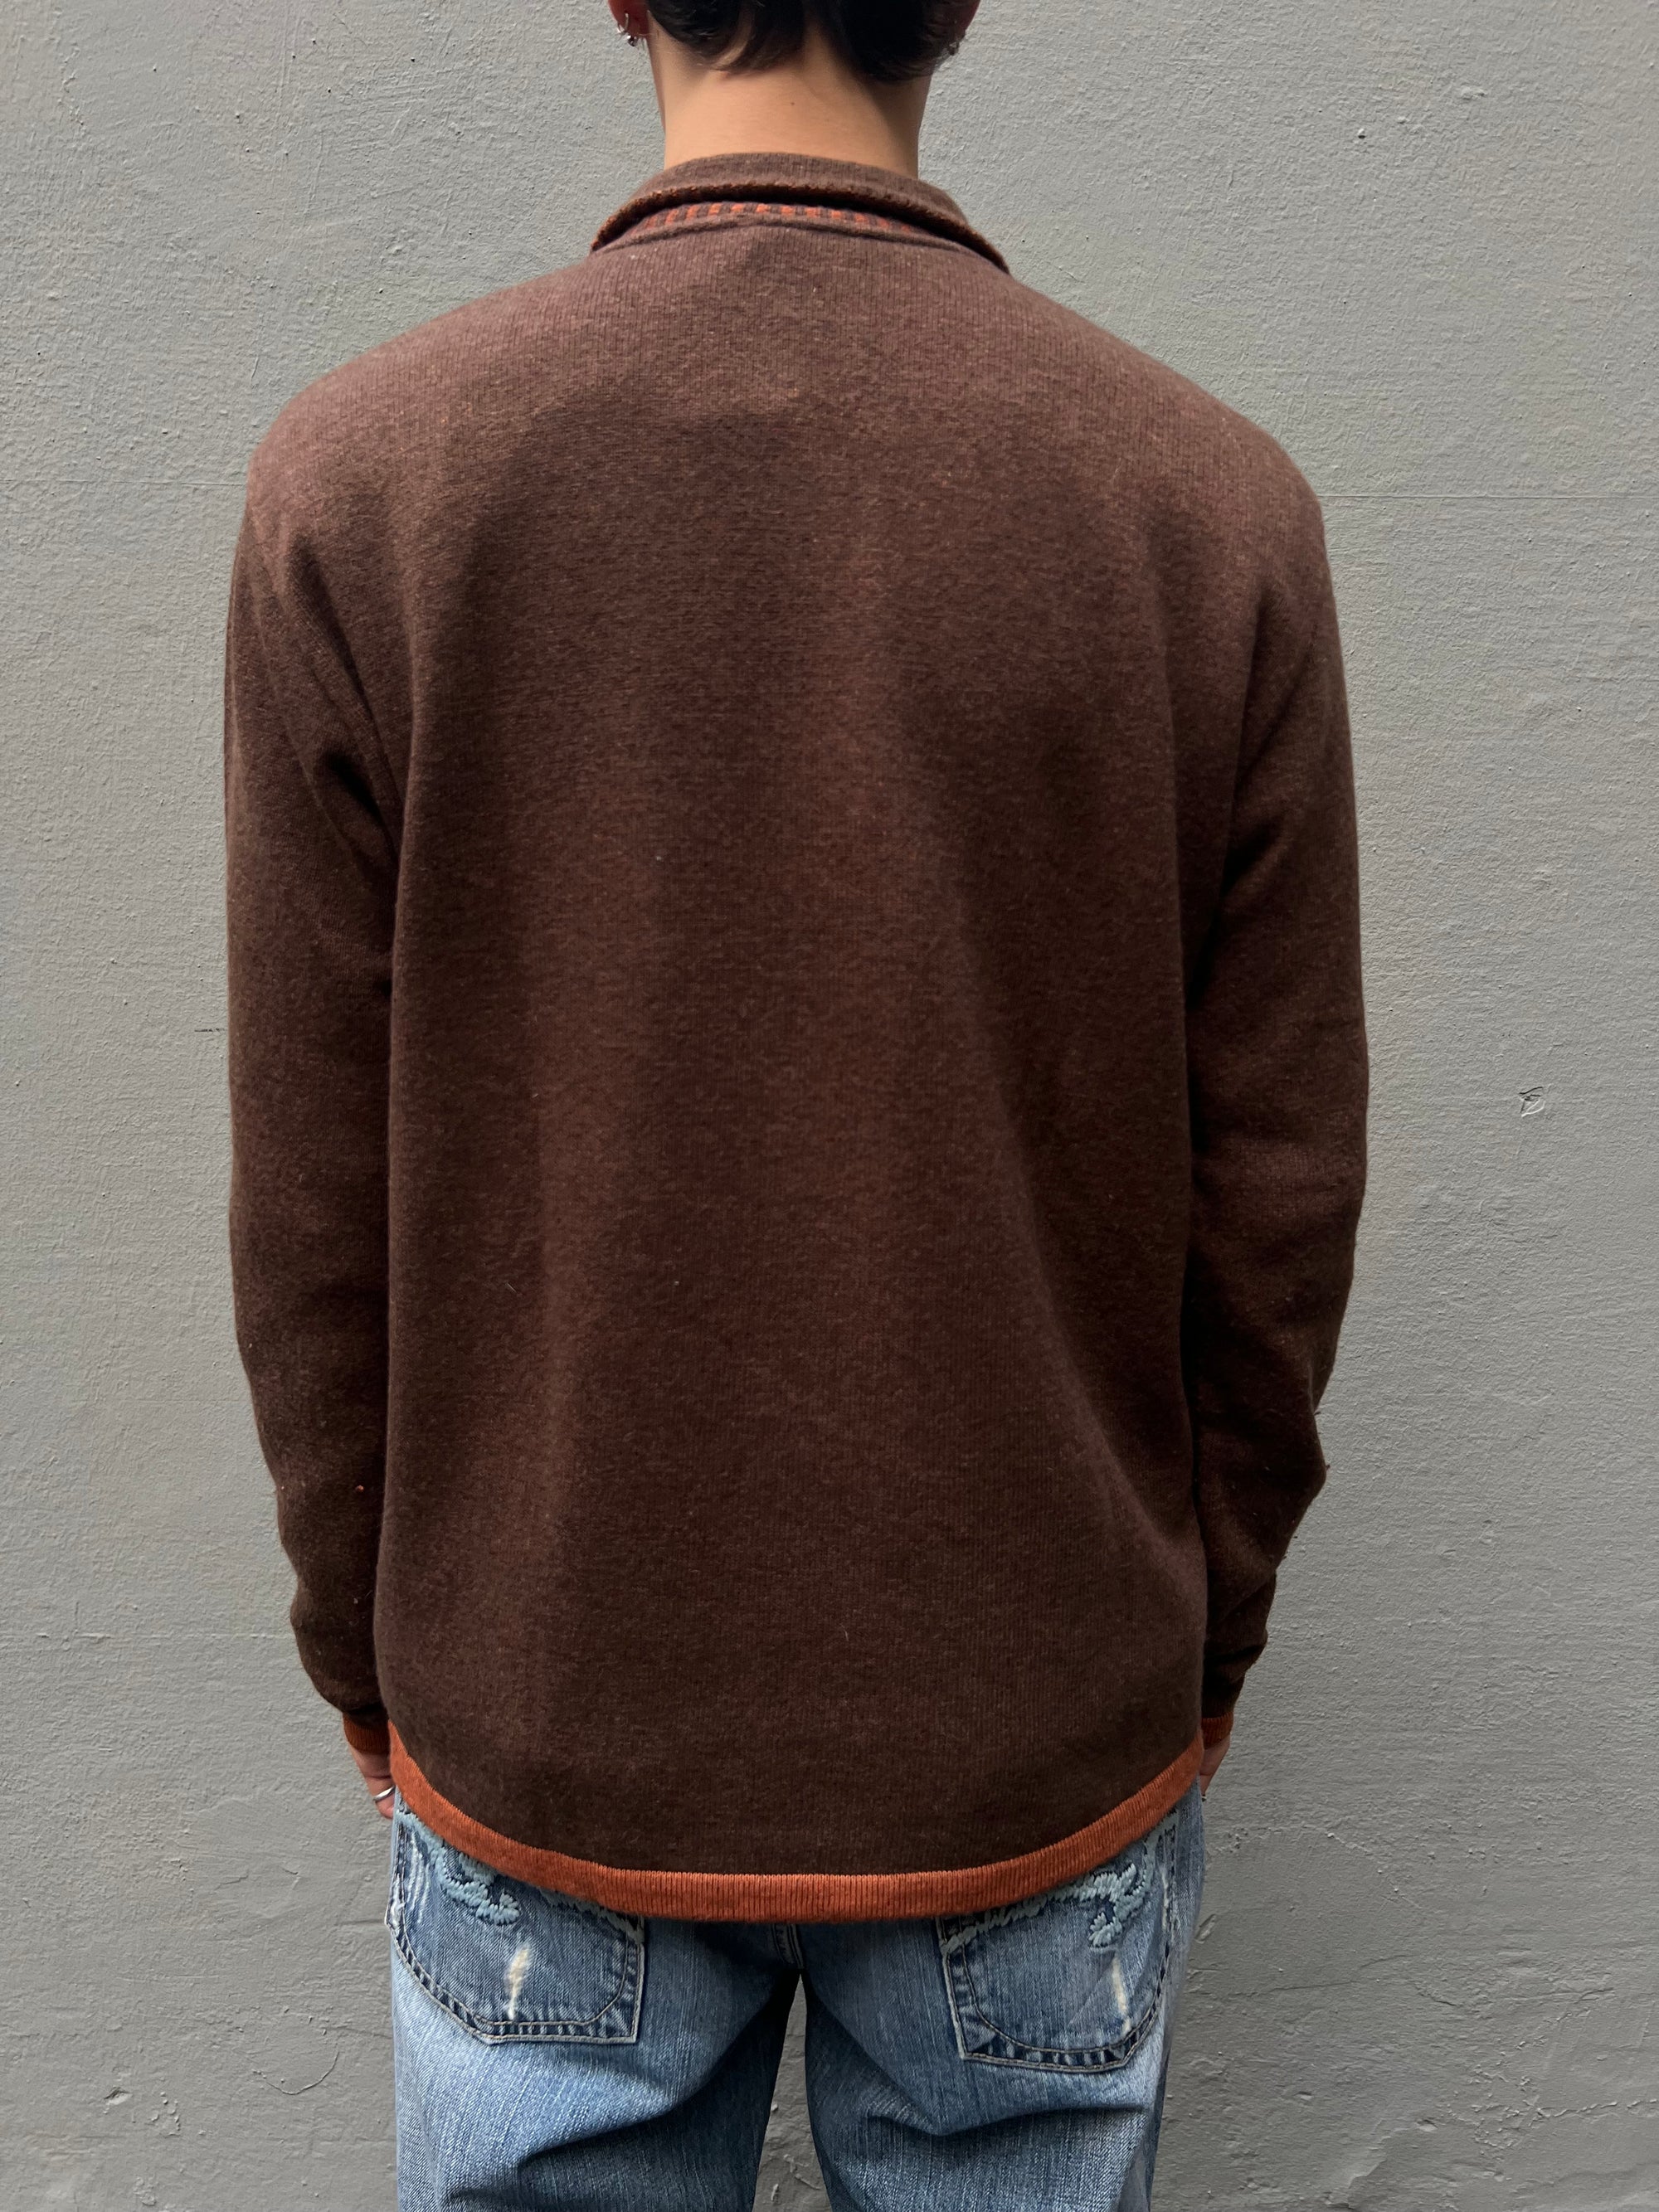 Vintage Trussardi Knit Sweater M/L In verschiedenen Brauntönen Von hinten